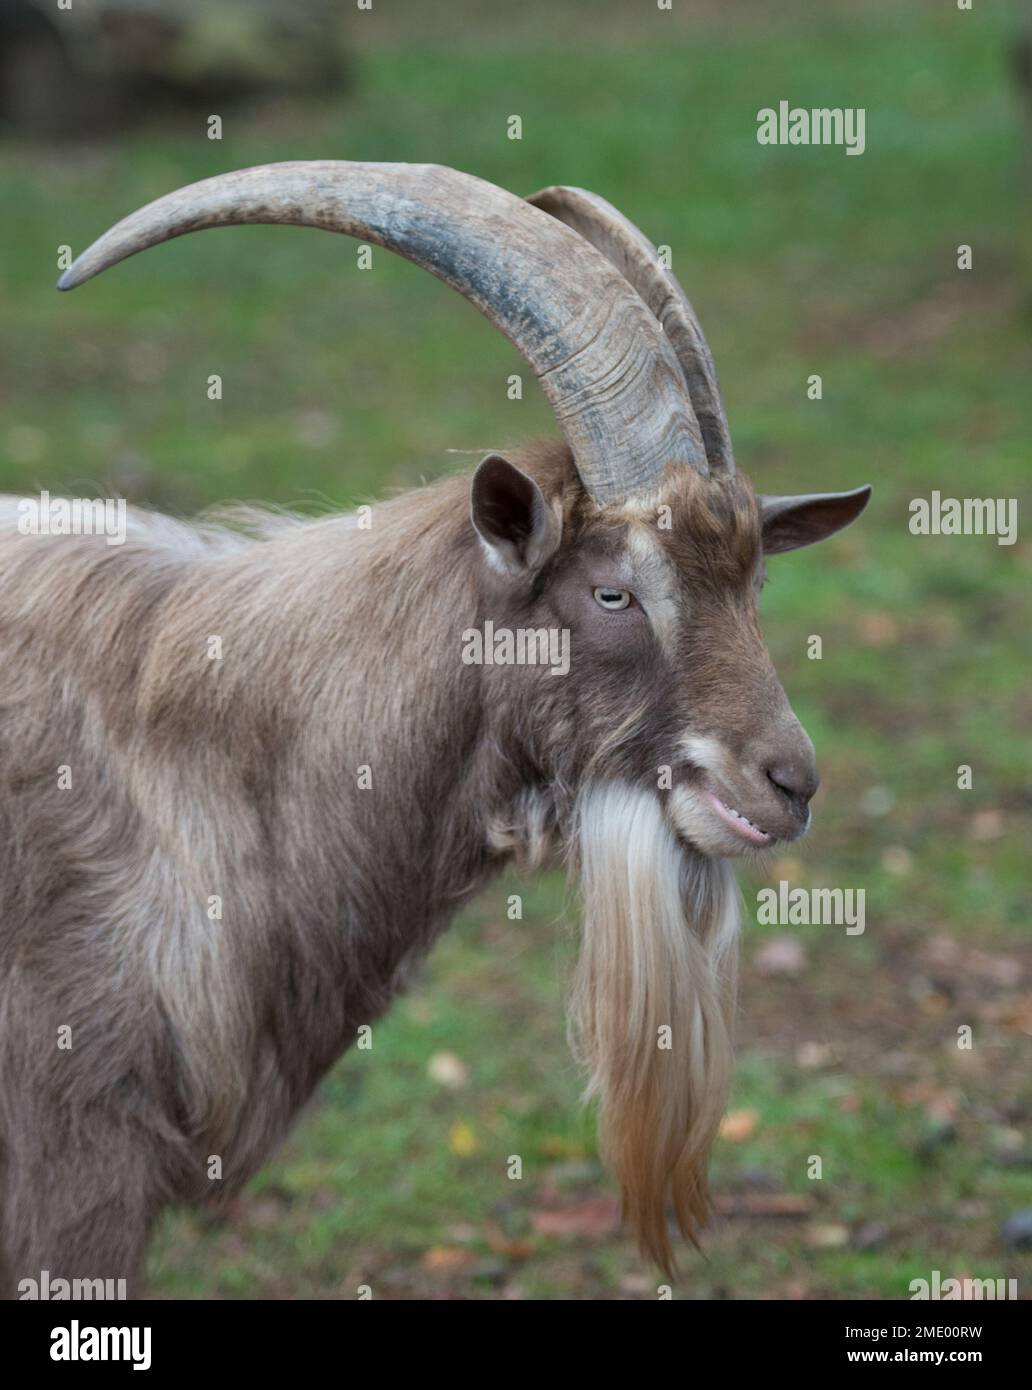 Un primo piano verticale di una capra olandese Landrace con corna grandi e capelli lunghi sotto il mento Foto Stock